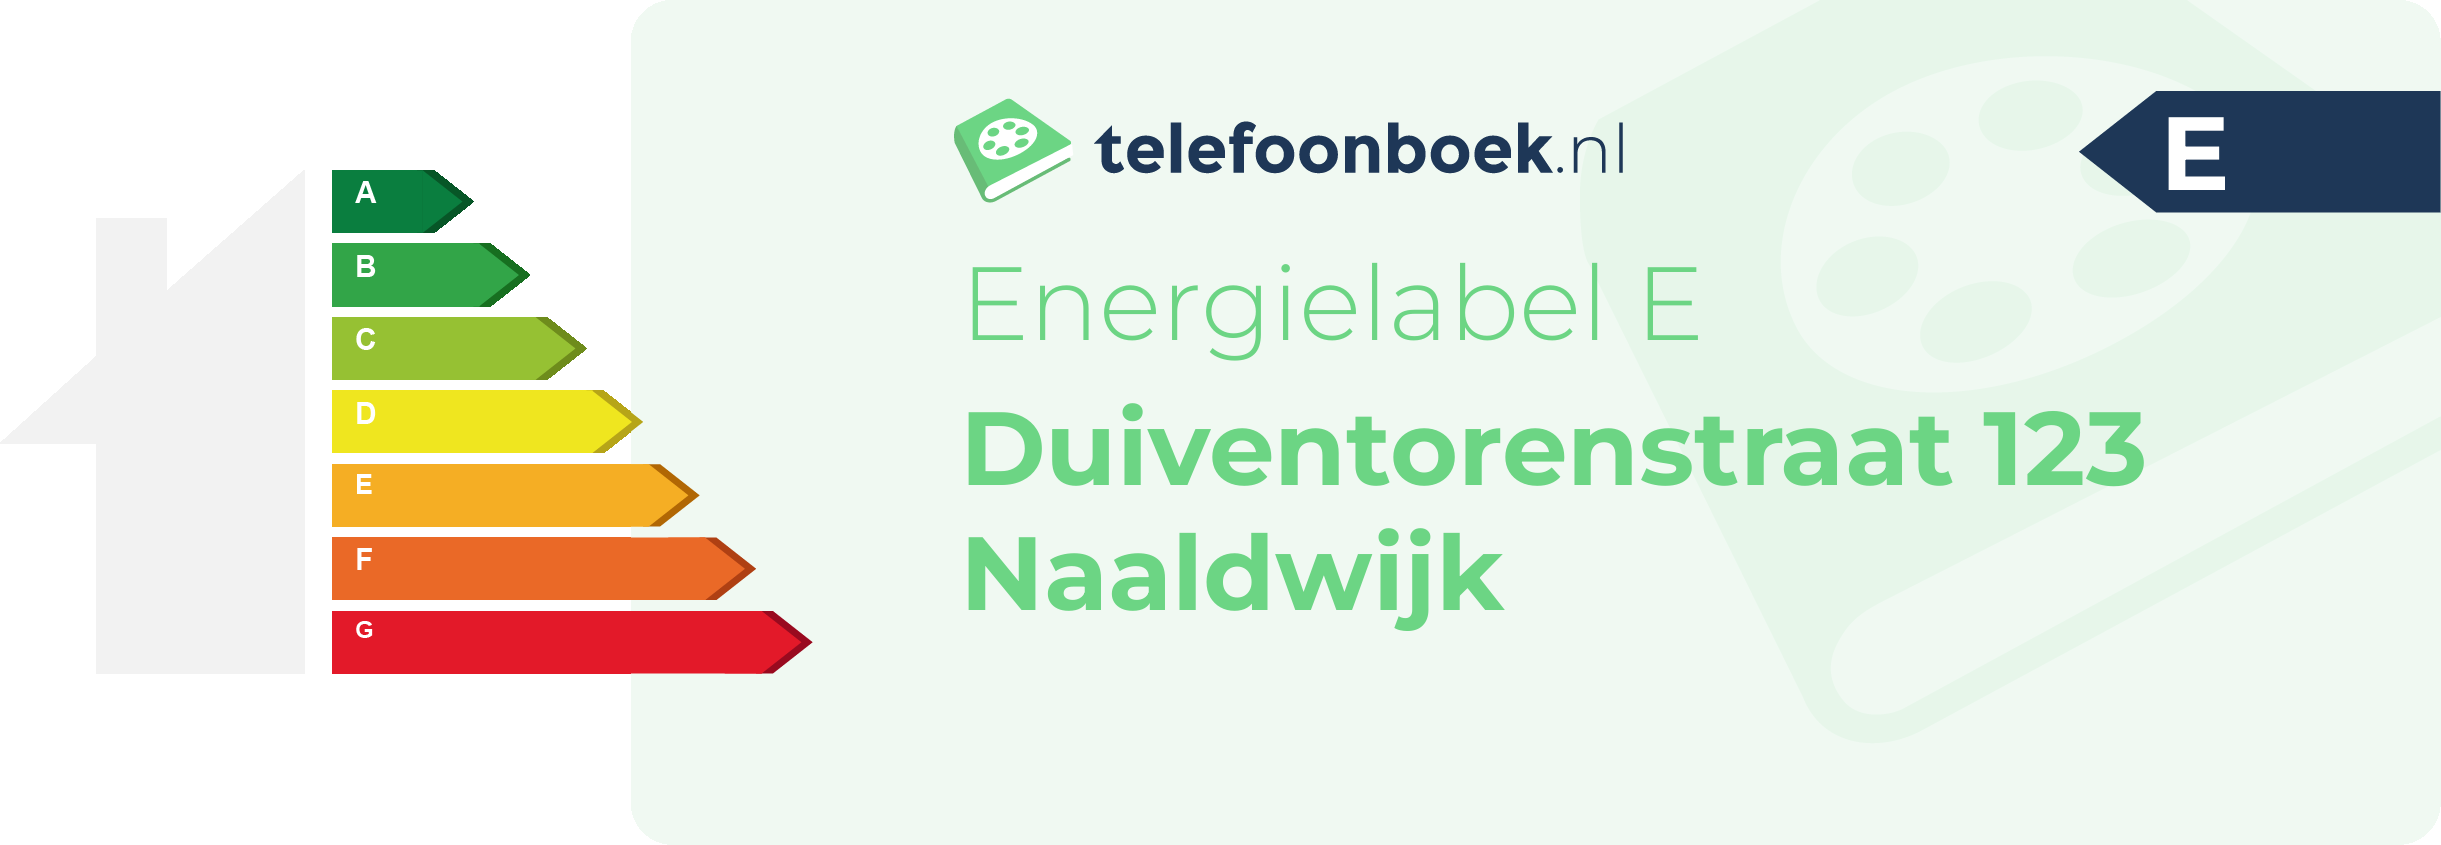 Energielabel Duiventorenstraat 123 Naaldwijk